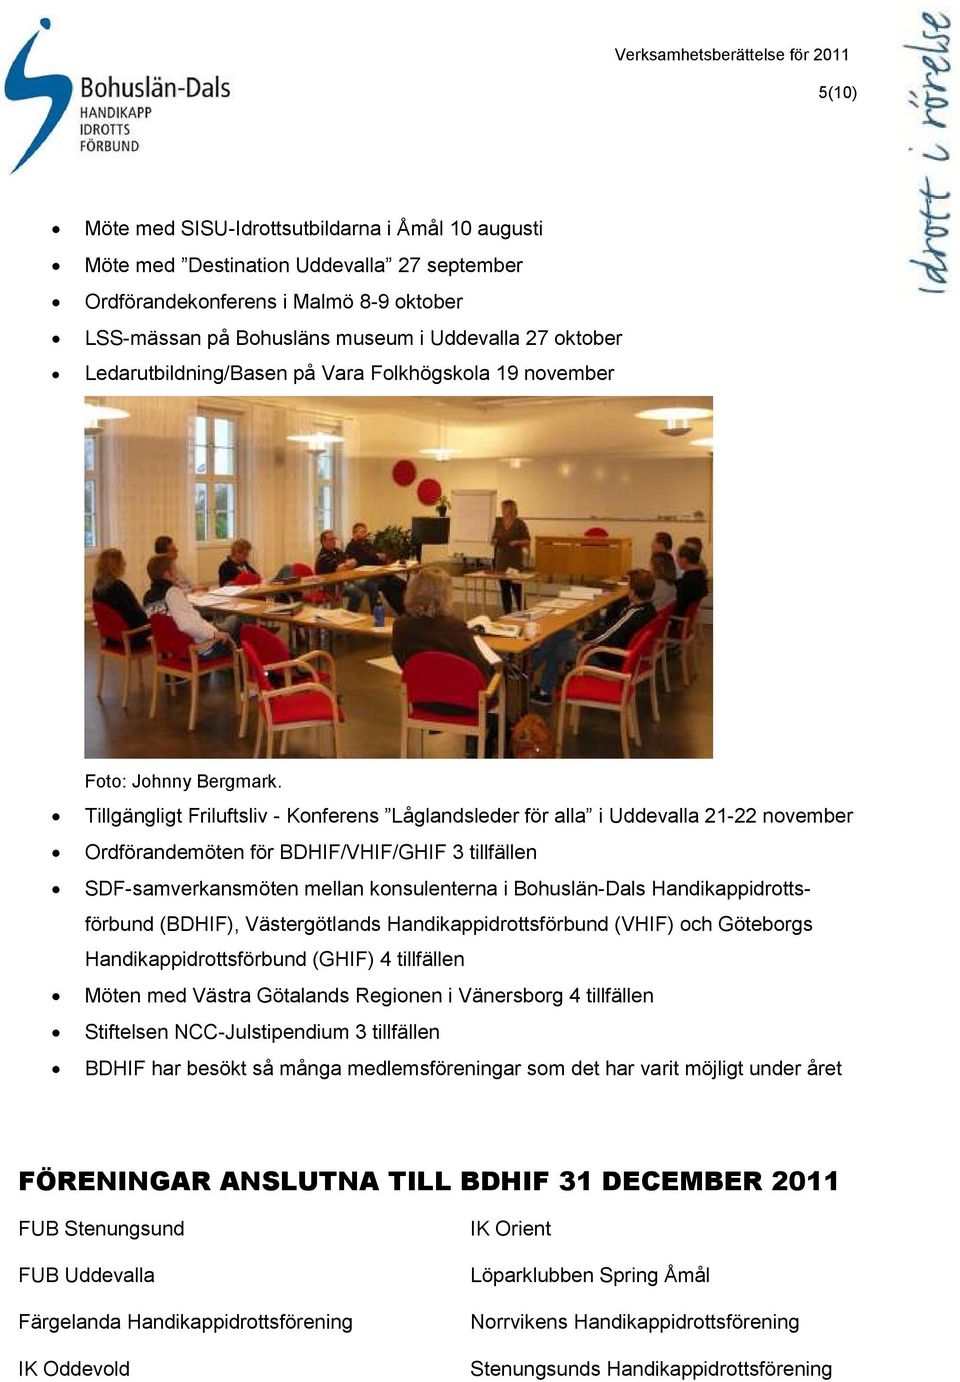 Tillgängligt Friluftsliv - Konferens Låglandsleder för alla i Uddevalla 21-22 november Ordförandemöten för BDHIF/VHIF/GHIF 3 tillfällen SDF-samverkansmöten mellan konsulenterna i Bohuslän-Dals